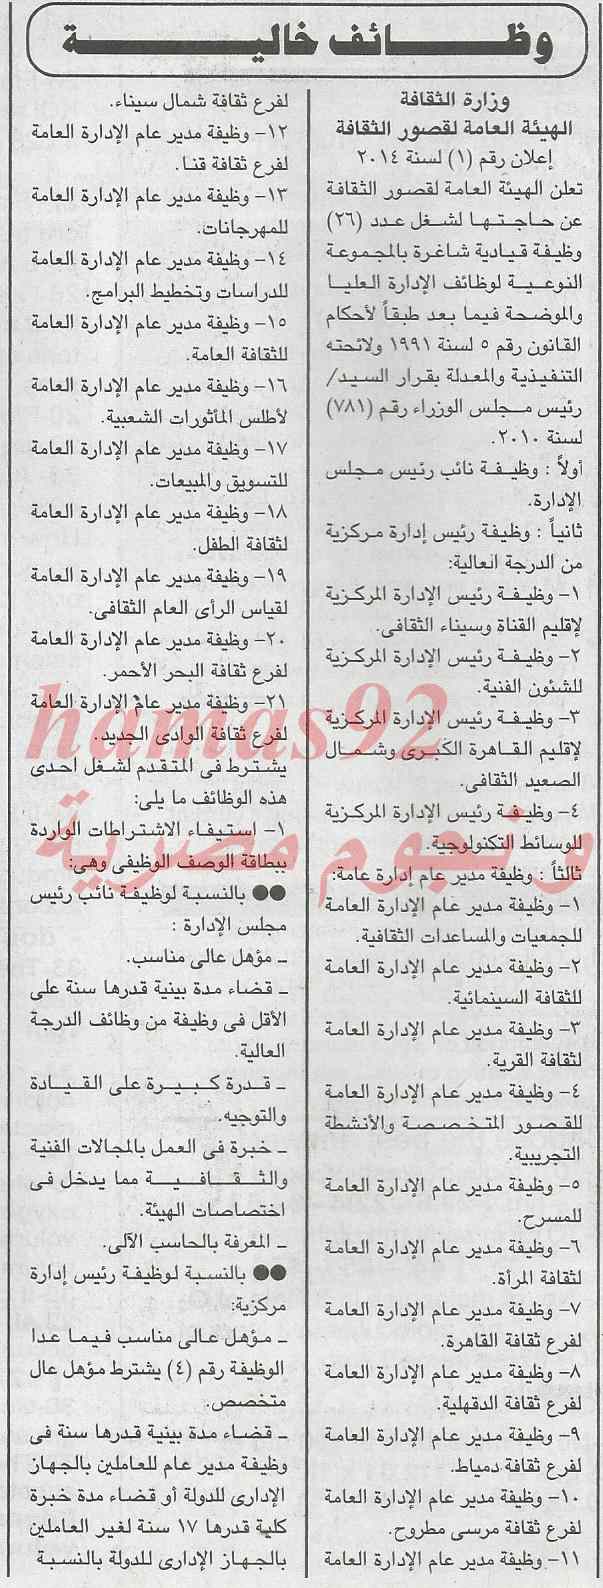 وظائف جريدة الجمهورية اليوم الاثنين 3-2-2014 , وظائف خالية في مصر 3 فبراير 2014